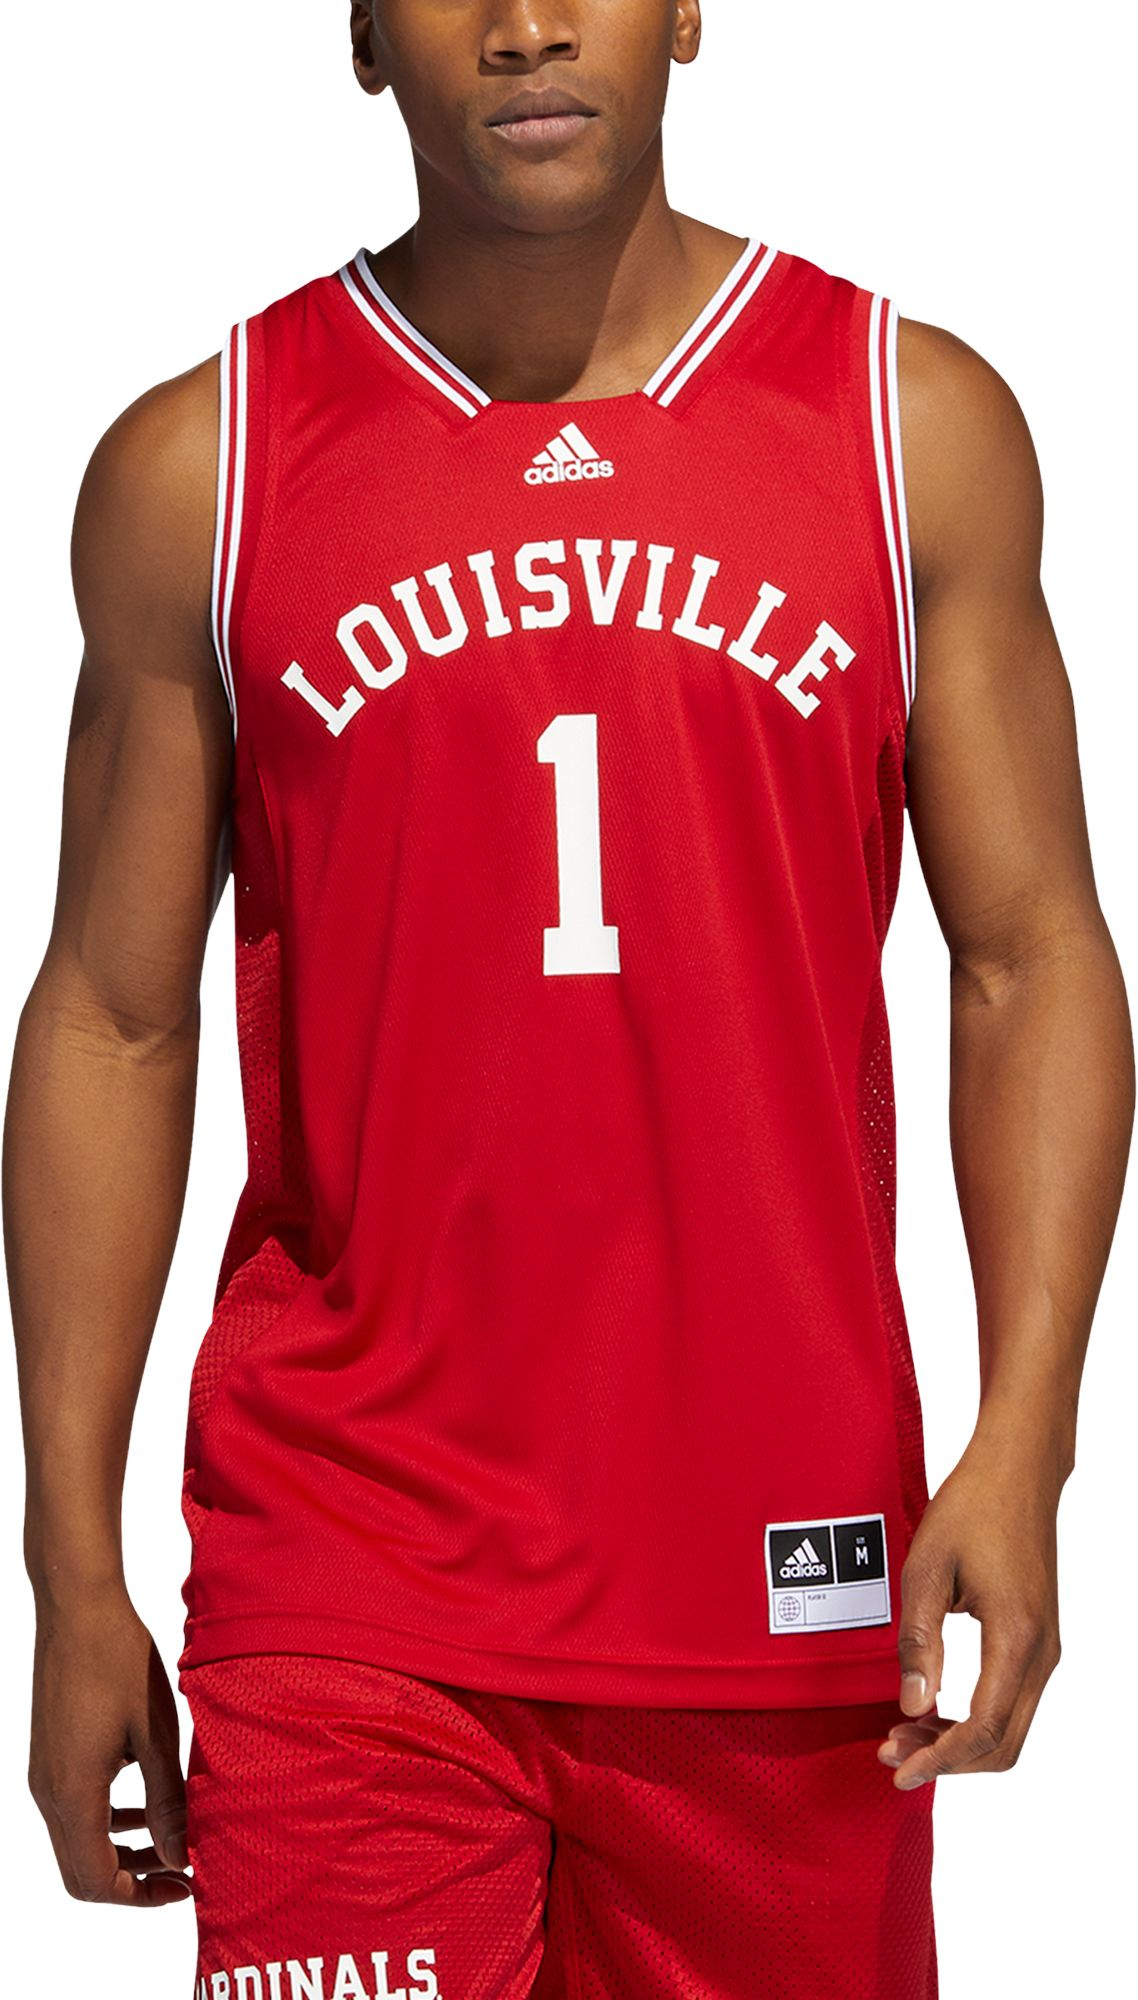 adidas Men's Louisville Cardinals #1 Cardinal Red Reverse Retro 2.0 Replica Basketball Jersey, XXL